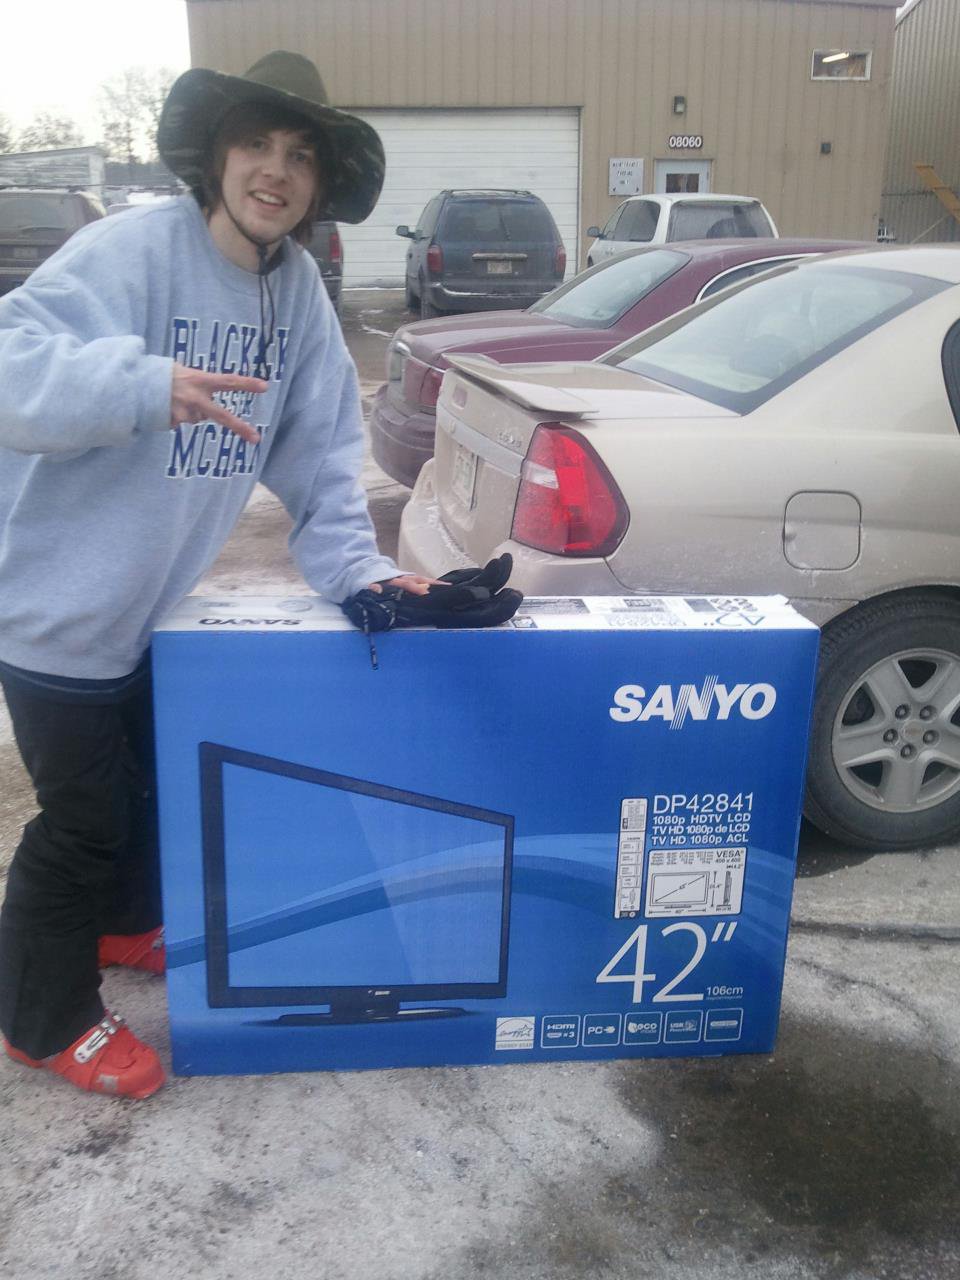 I won a tv!